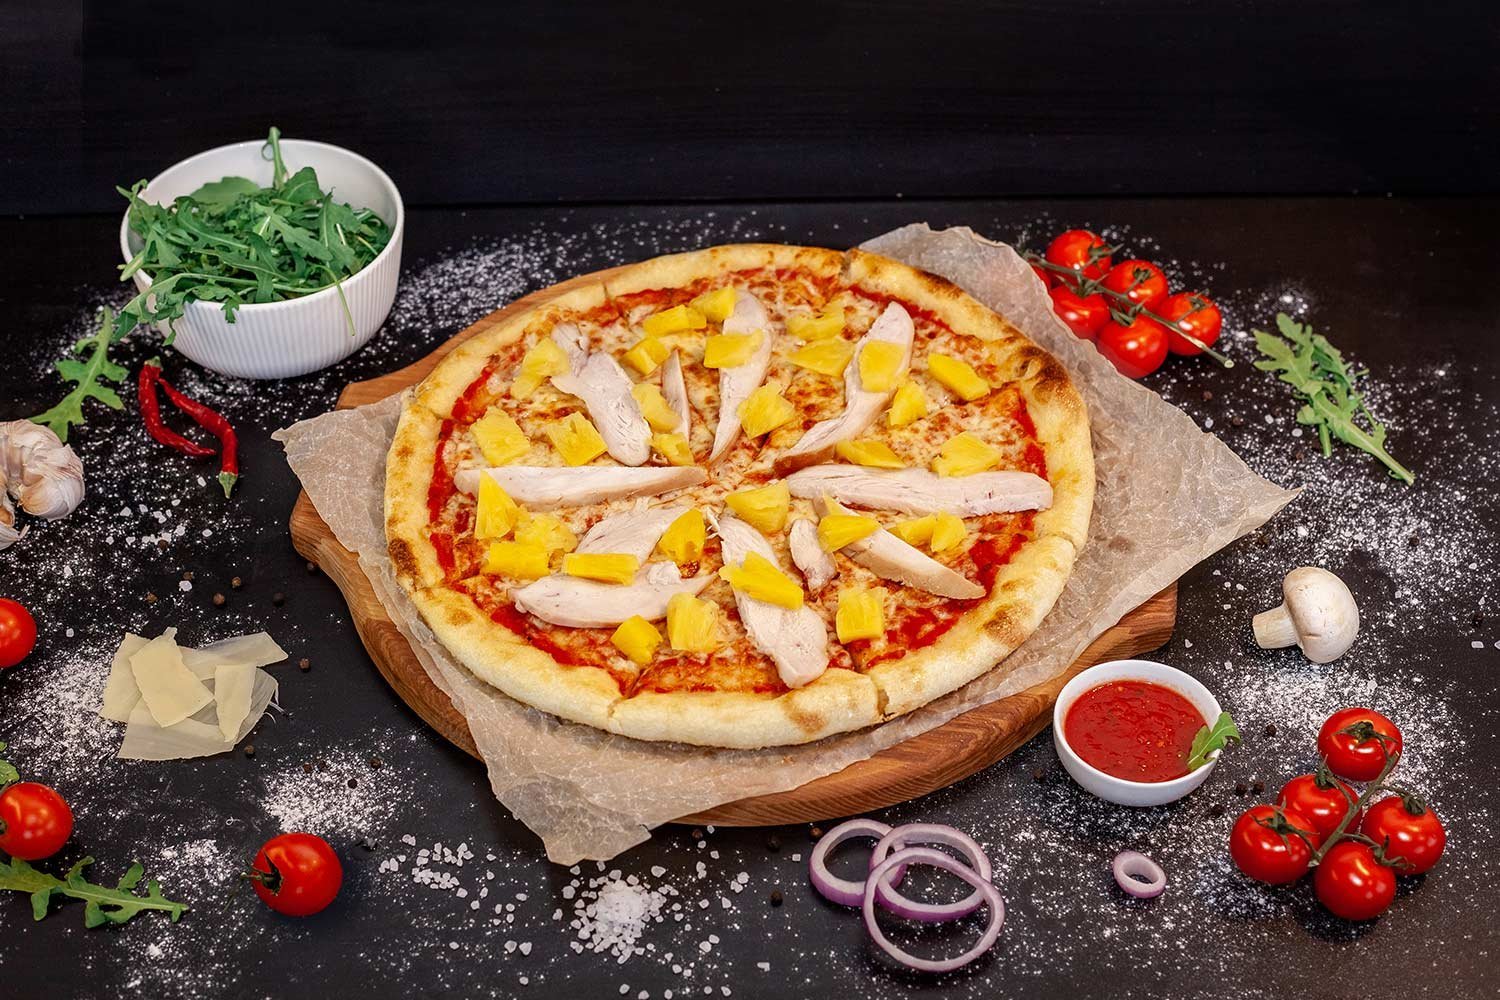 севастополь лучшая пицца в фото 32